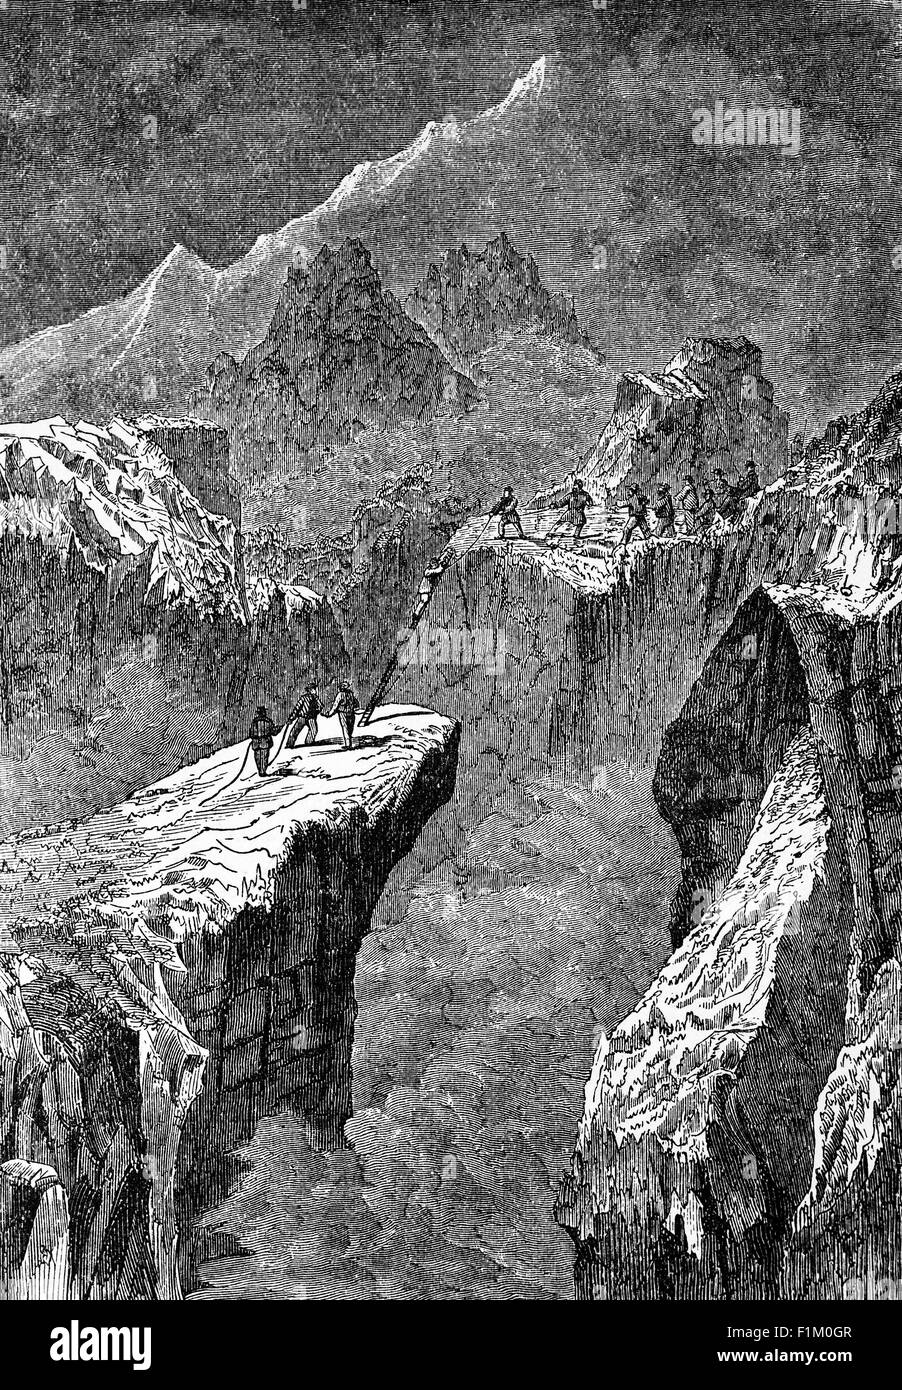 Un groupe de grimpeurs dans les Alpes suisses. Au début du XIXe siècle, de nombreux sommets alpins ont été atteints, dont le plus spectaculaire a été la première ascension spectaculaire du Cervin en 1865 par un parti dirigé par l'illustrateur anglais Edward Whymper. Malgré le sport de l'alpinisme qui a largement atteint sa forme moderne, avec un grand nombre de guides professionnels, d'équipements et de méthodologies, quatre des membres du parti sont tombés à leur mort. Banque D'Images